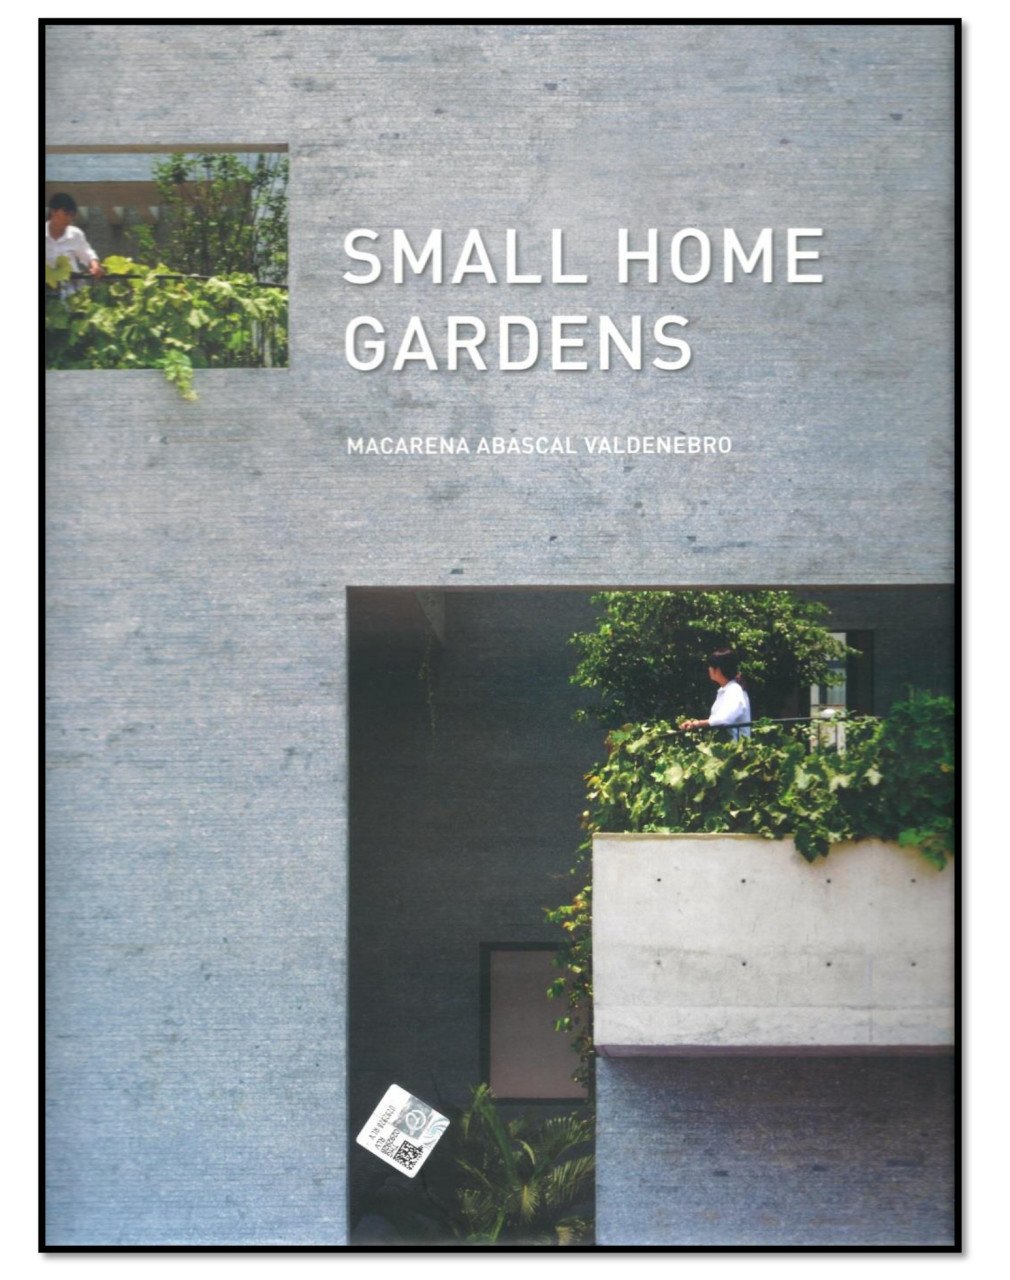 Small Home Gardens (Evlerde Küçük Bahçeler)